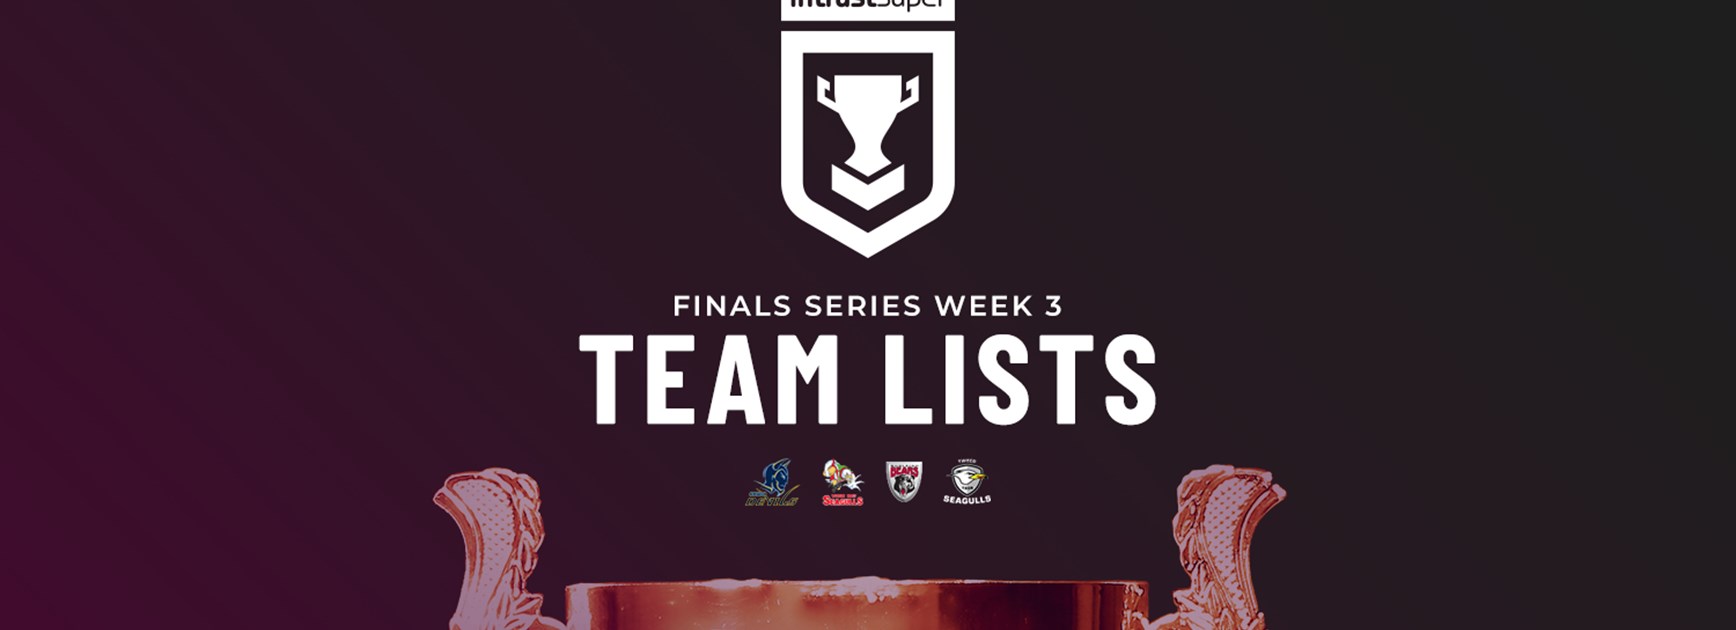 Intrust Super Cup Finals Week 3 team lists